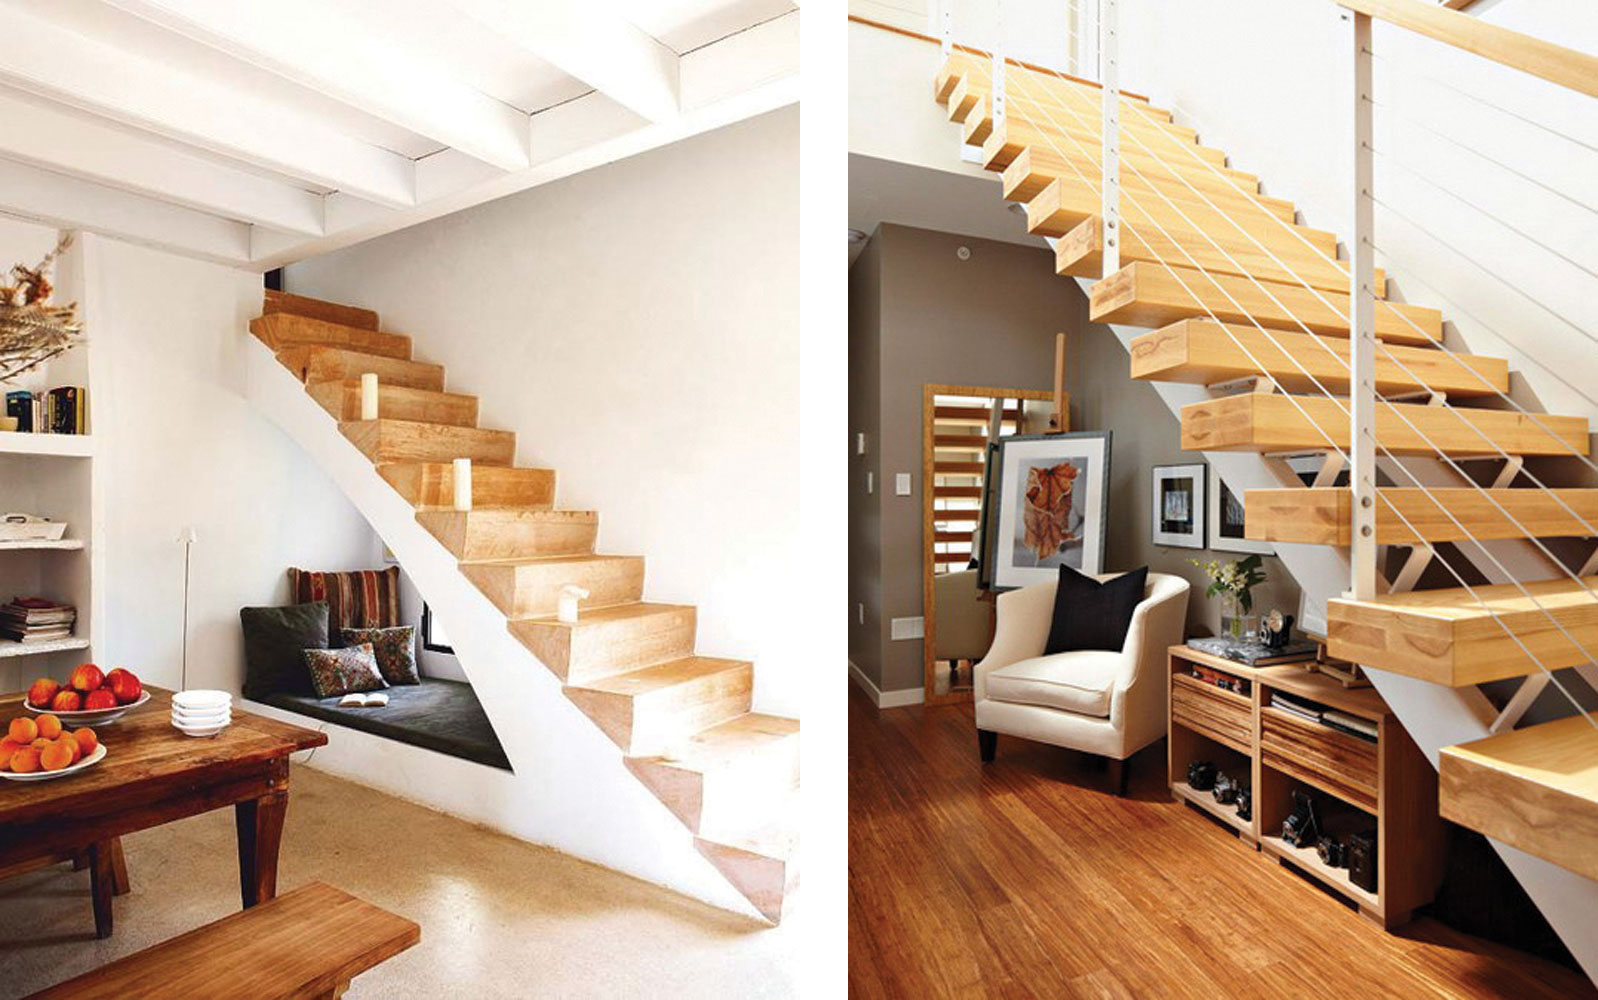 Grant Chair sofa Ką galima įrengti po laiptais? | E namai